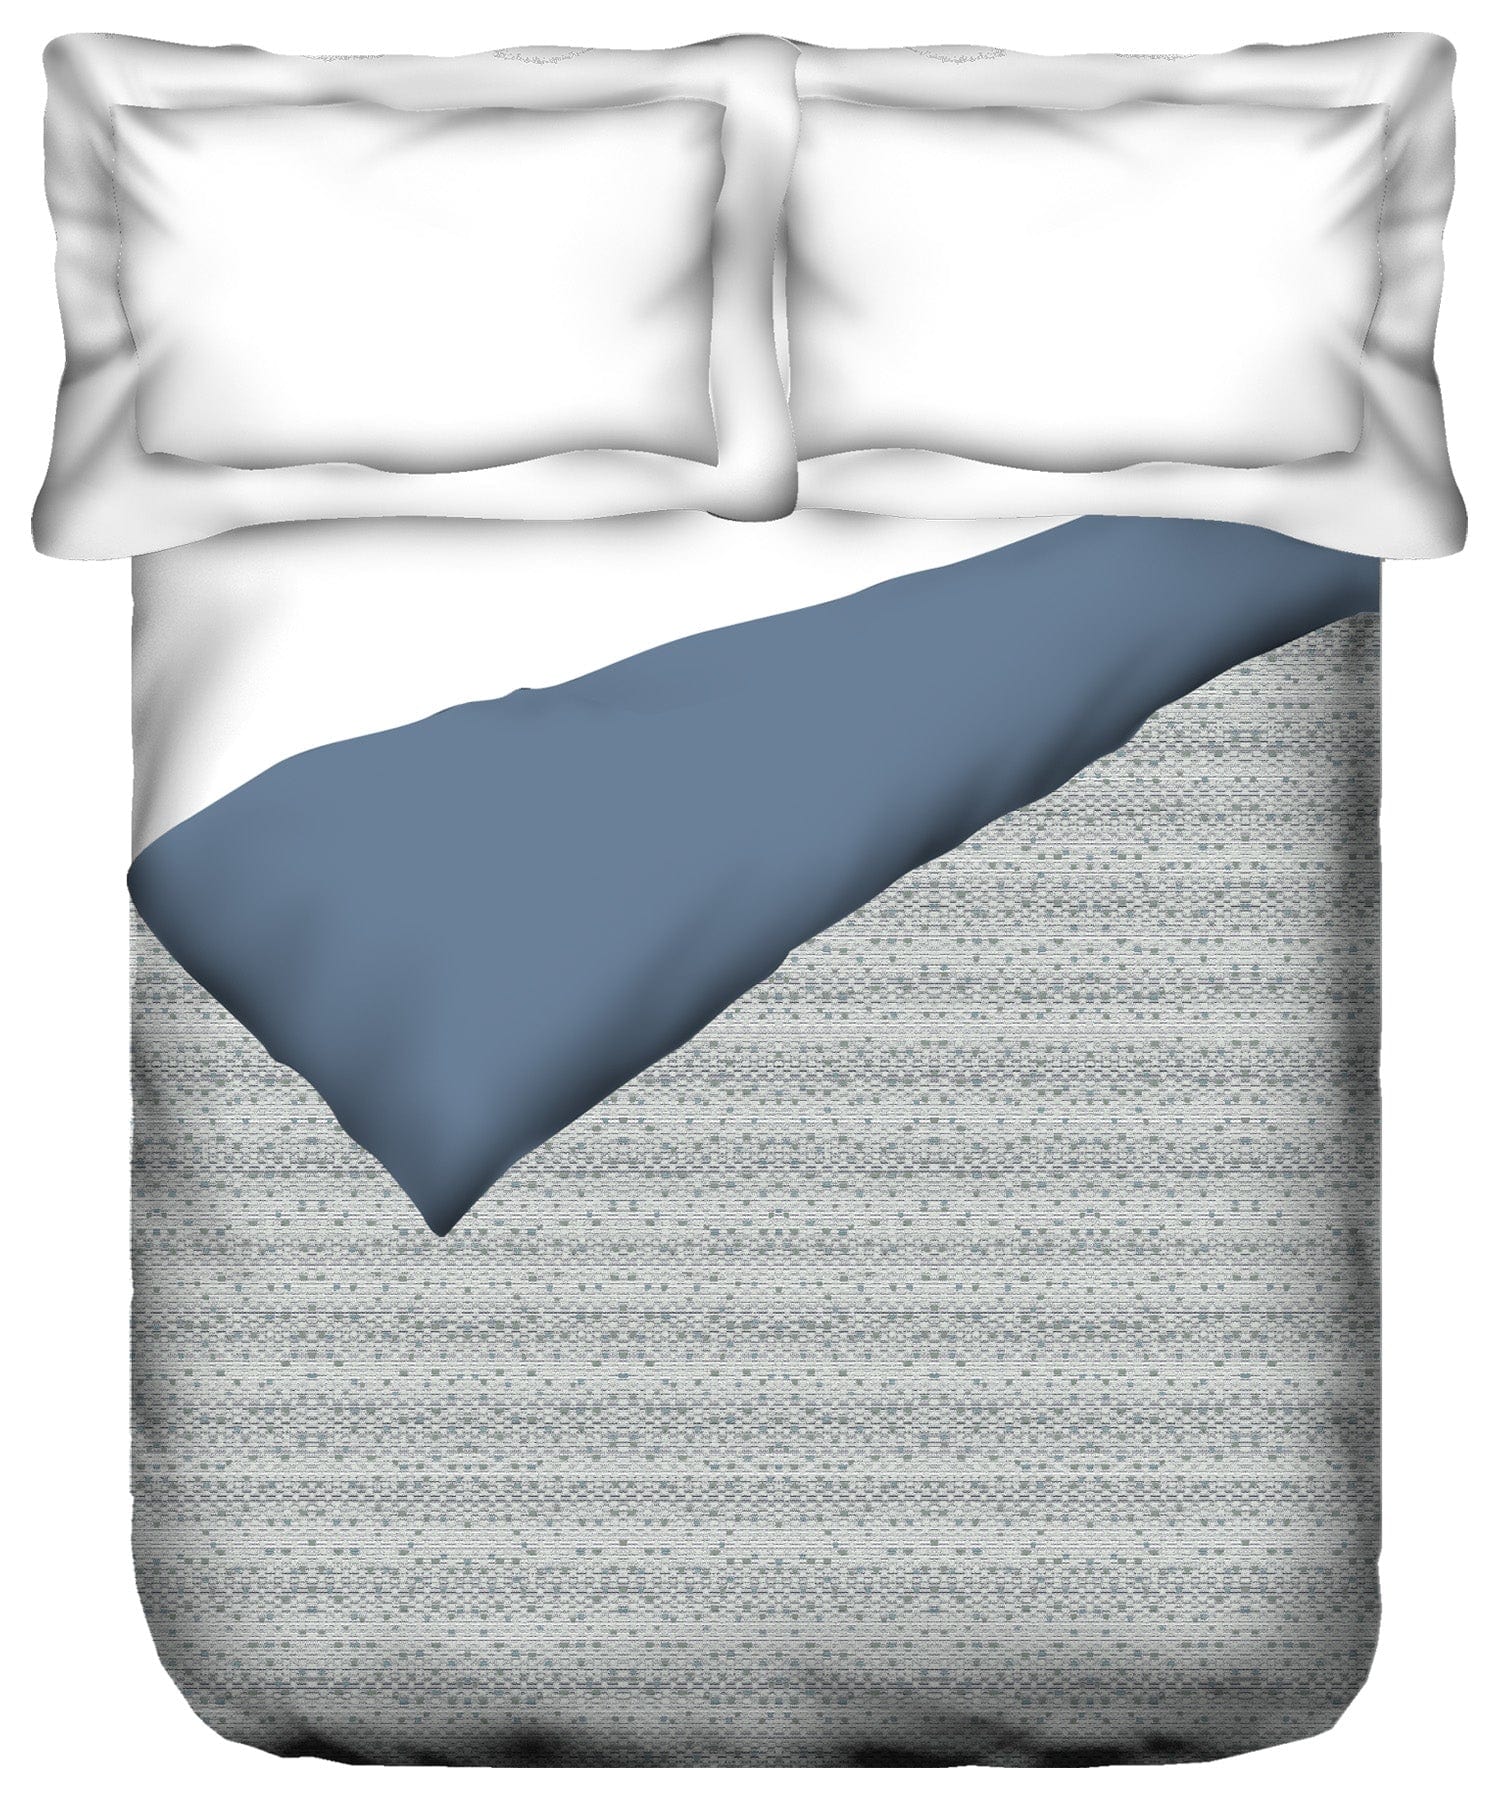 Comforter ₹4499/-